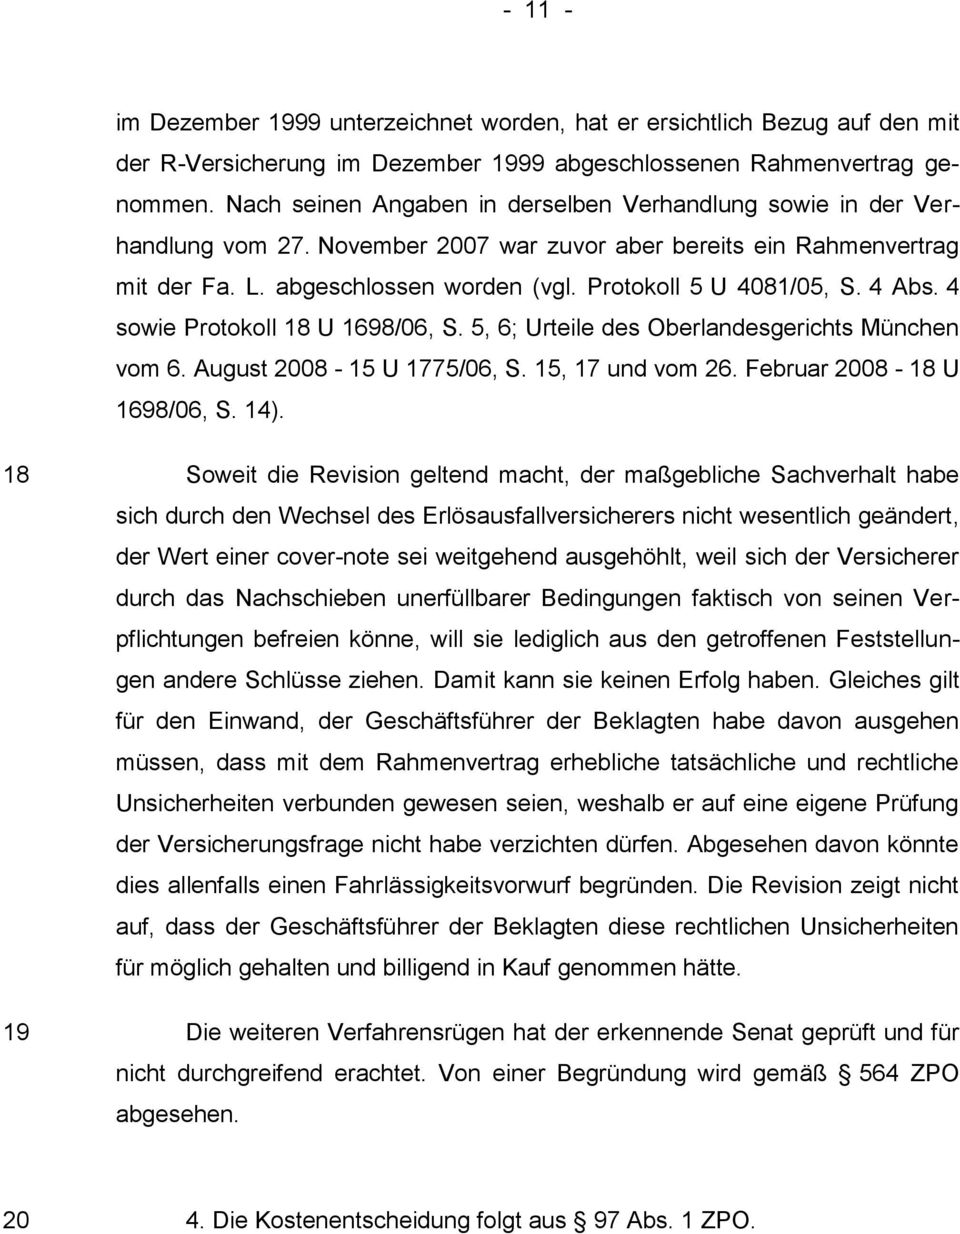 4 Abs. 4 sowie Protokoll 18 U 1698/06, S. 5, 6; Urteile des Oberlandesgerichts München vom 6. August 2008-15 U 1775/06, S. 15, 17 und vom 26. Februar 2008-18 U 1698/06, S. 14).